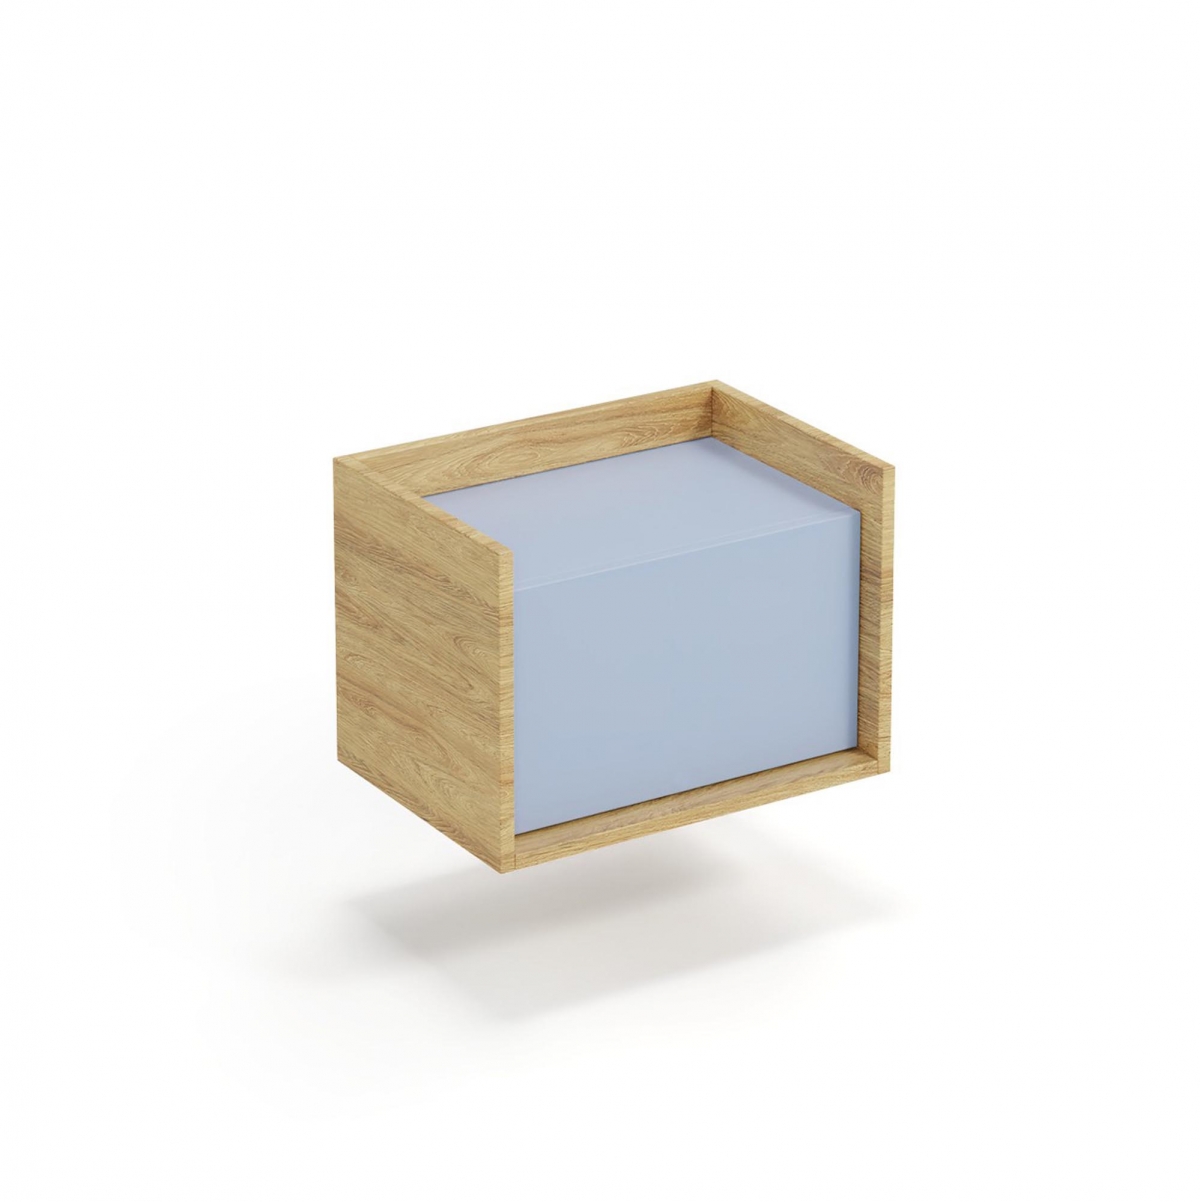 Skříňka Mobius 1D - hikora přírodní / modrý horizont mobius skříňka nízká 1D korpus: hikora přírodní, přední části - modrý obzor